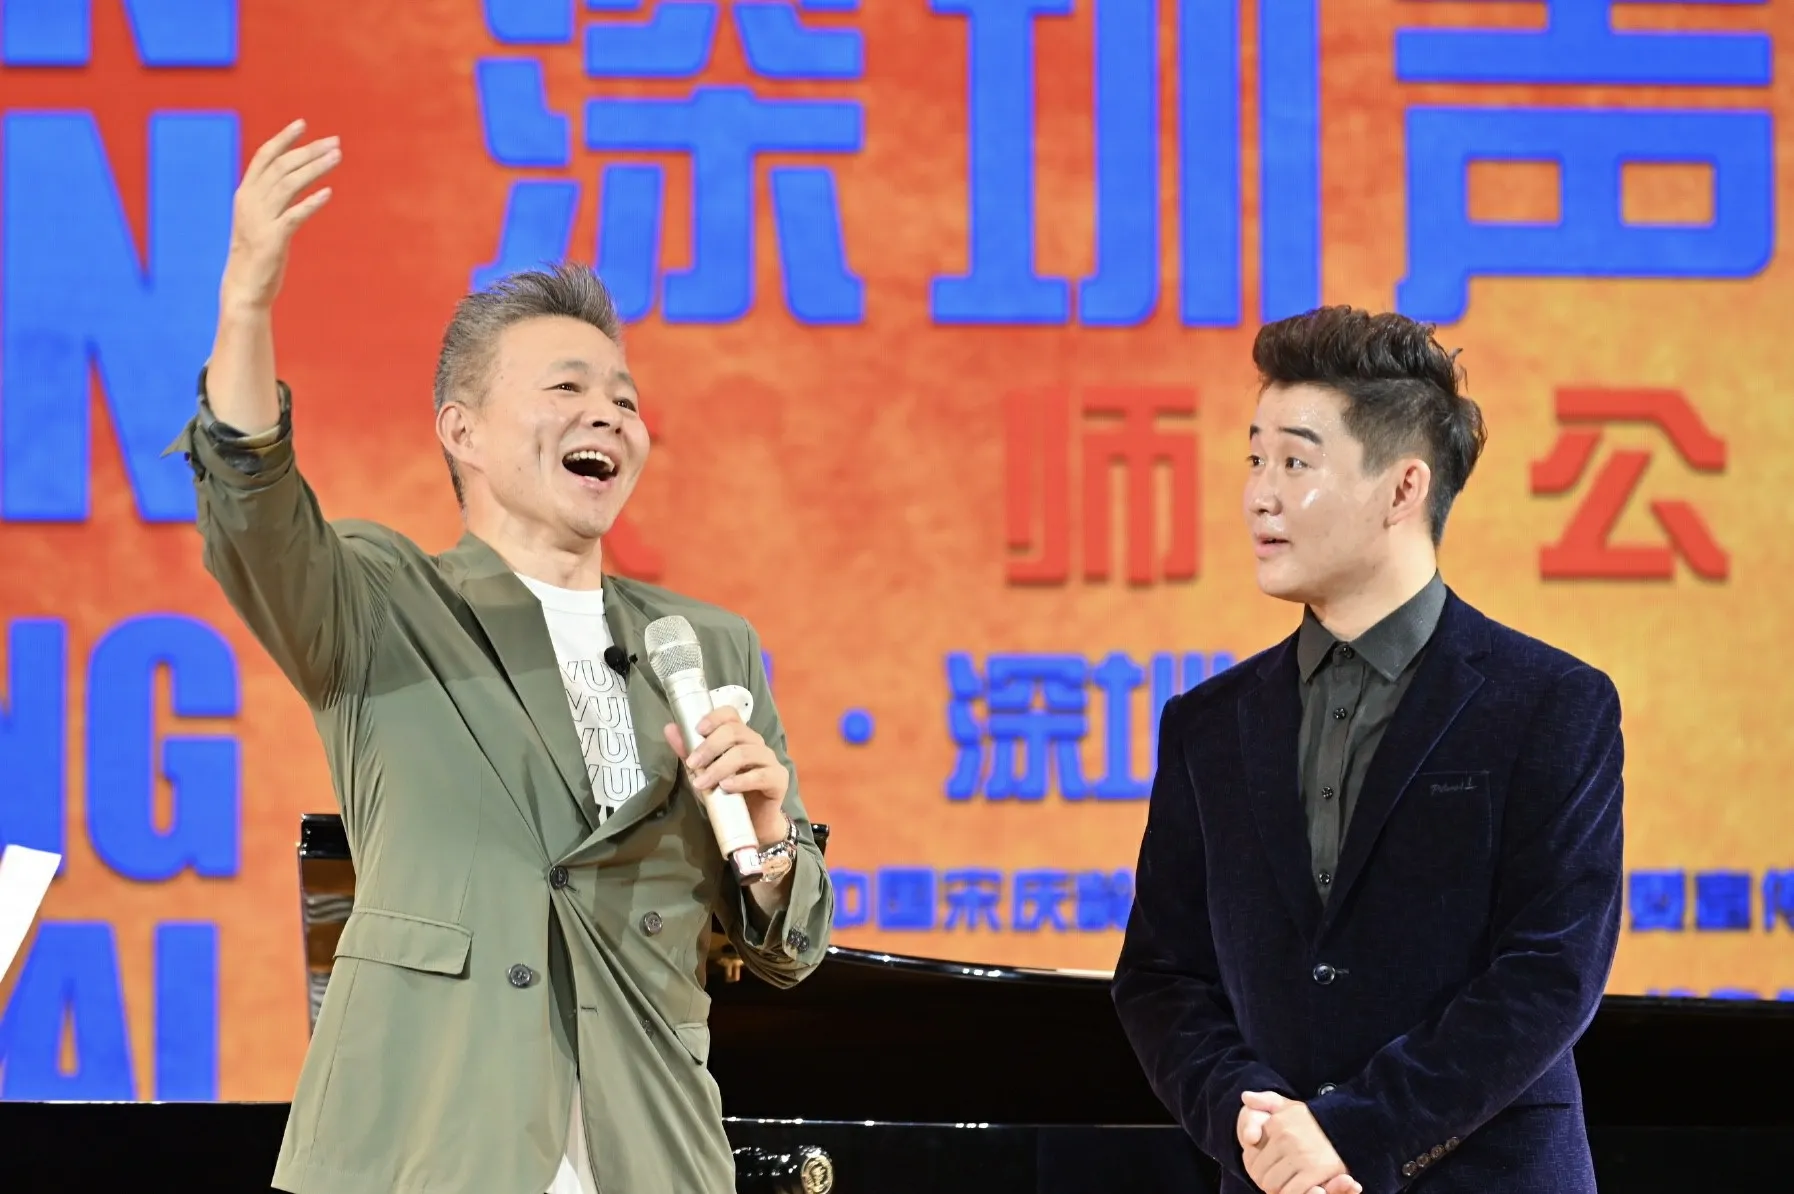  Lei Jia 发布“中国声乐人才培养计划·大师公开课”系列公益课程5.jpg